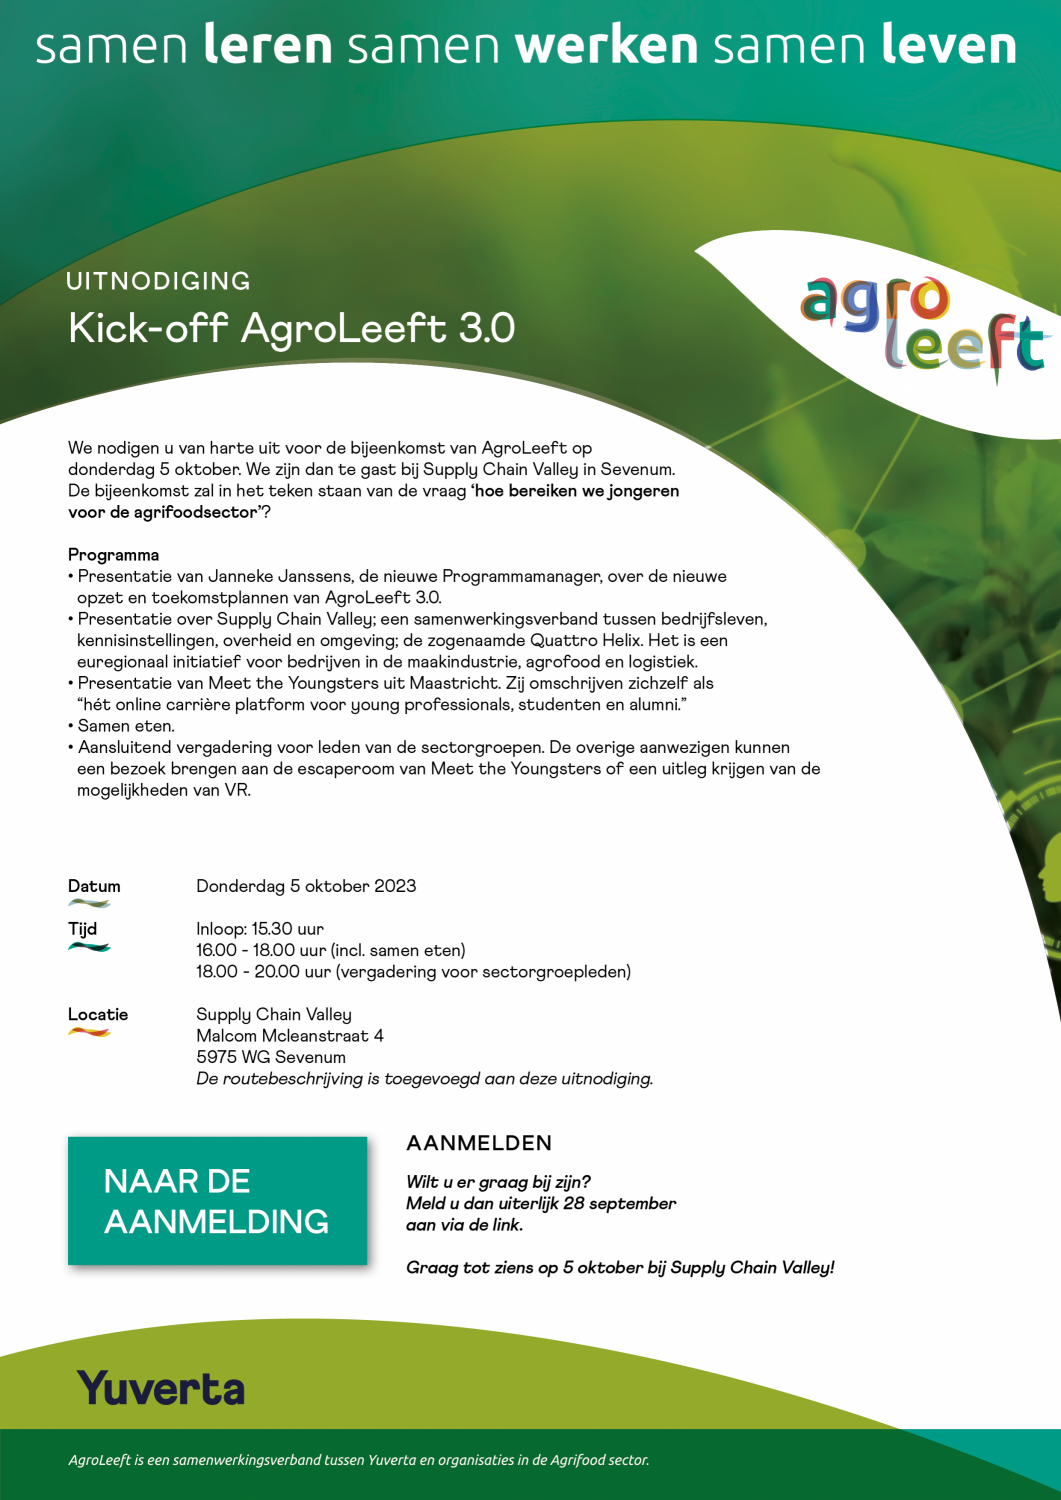 Uitnodiging Kick-off AgroLeeft 3.0 op 5 oktober 2023